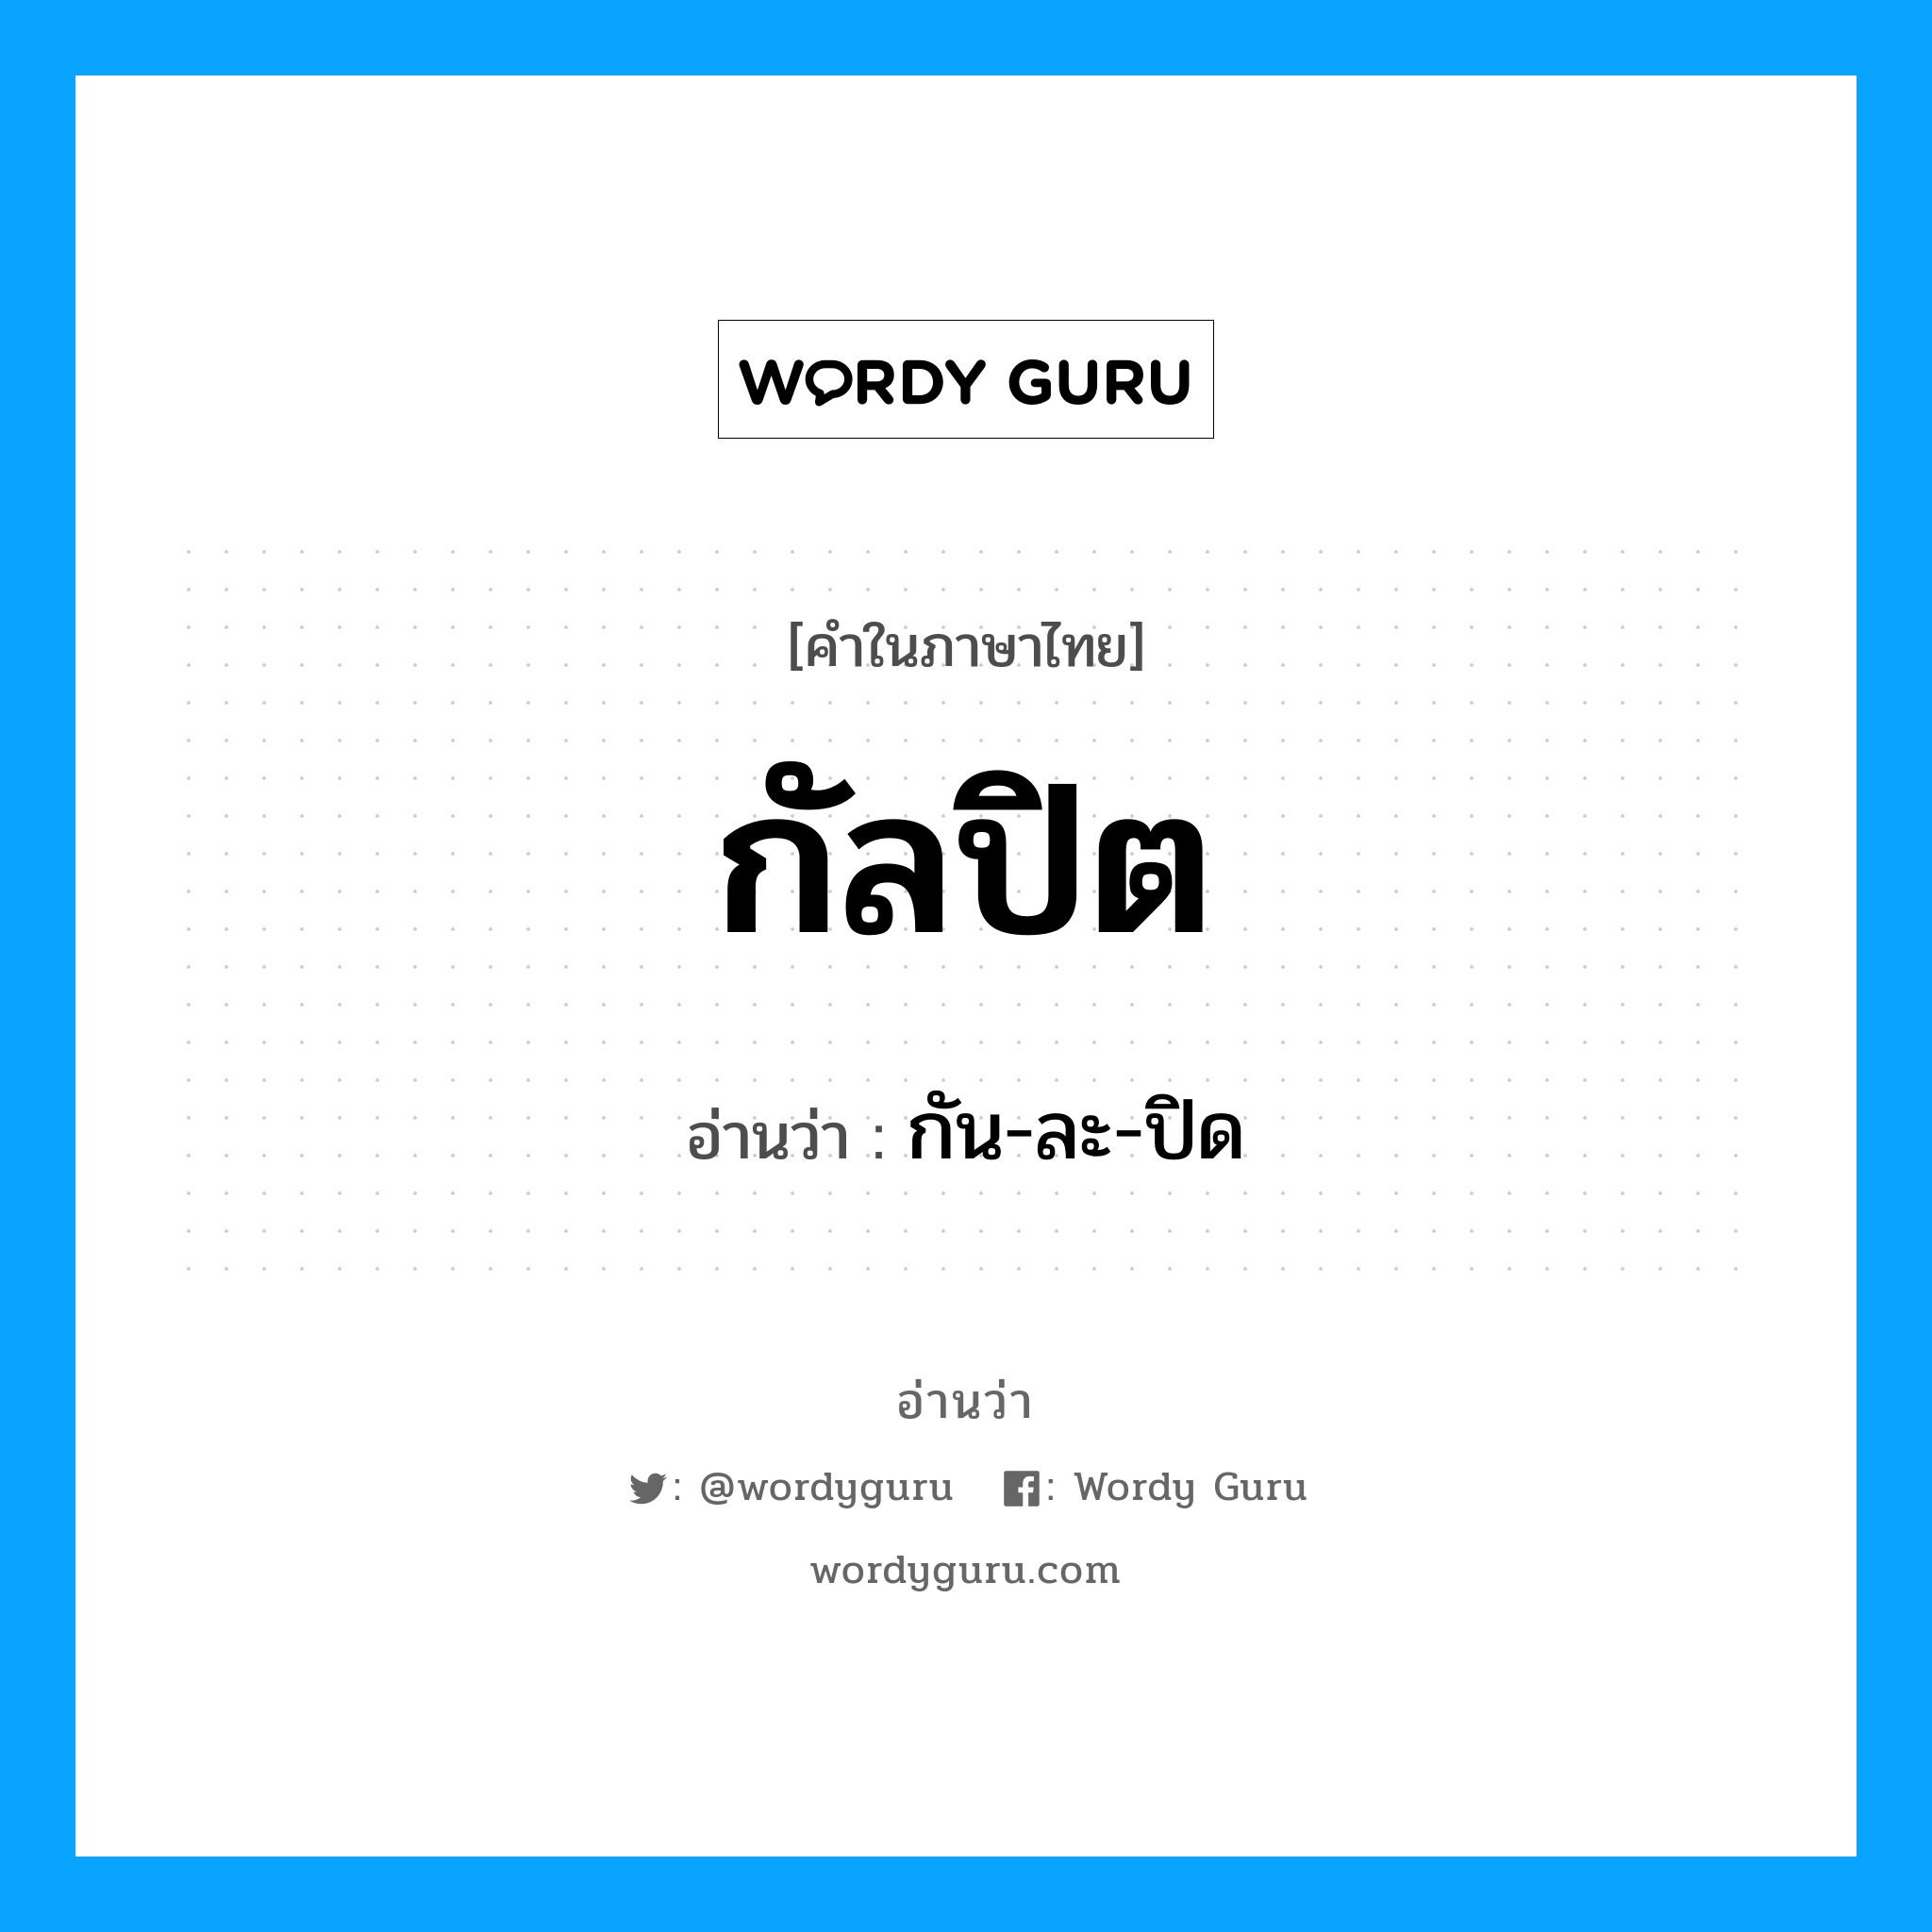 กัน-ละ-ปิด เป็นคำอ่านของคำไหน?, คำในภาษาไทย กัน-ละ-ปิด อ่านว่า กัลปิต